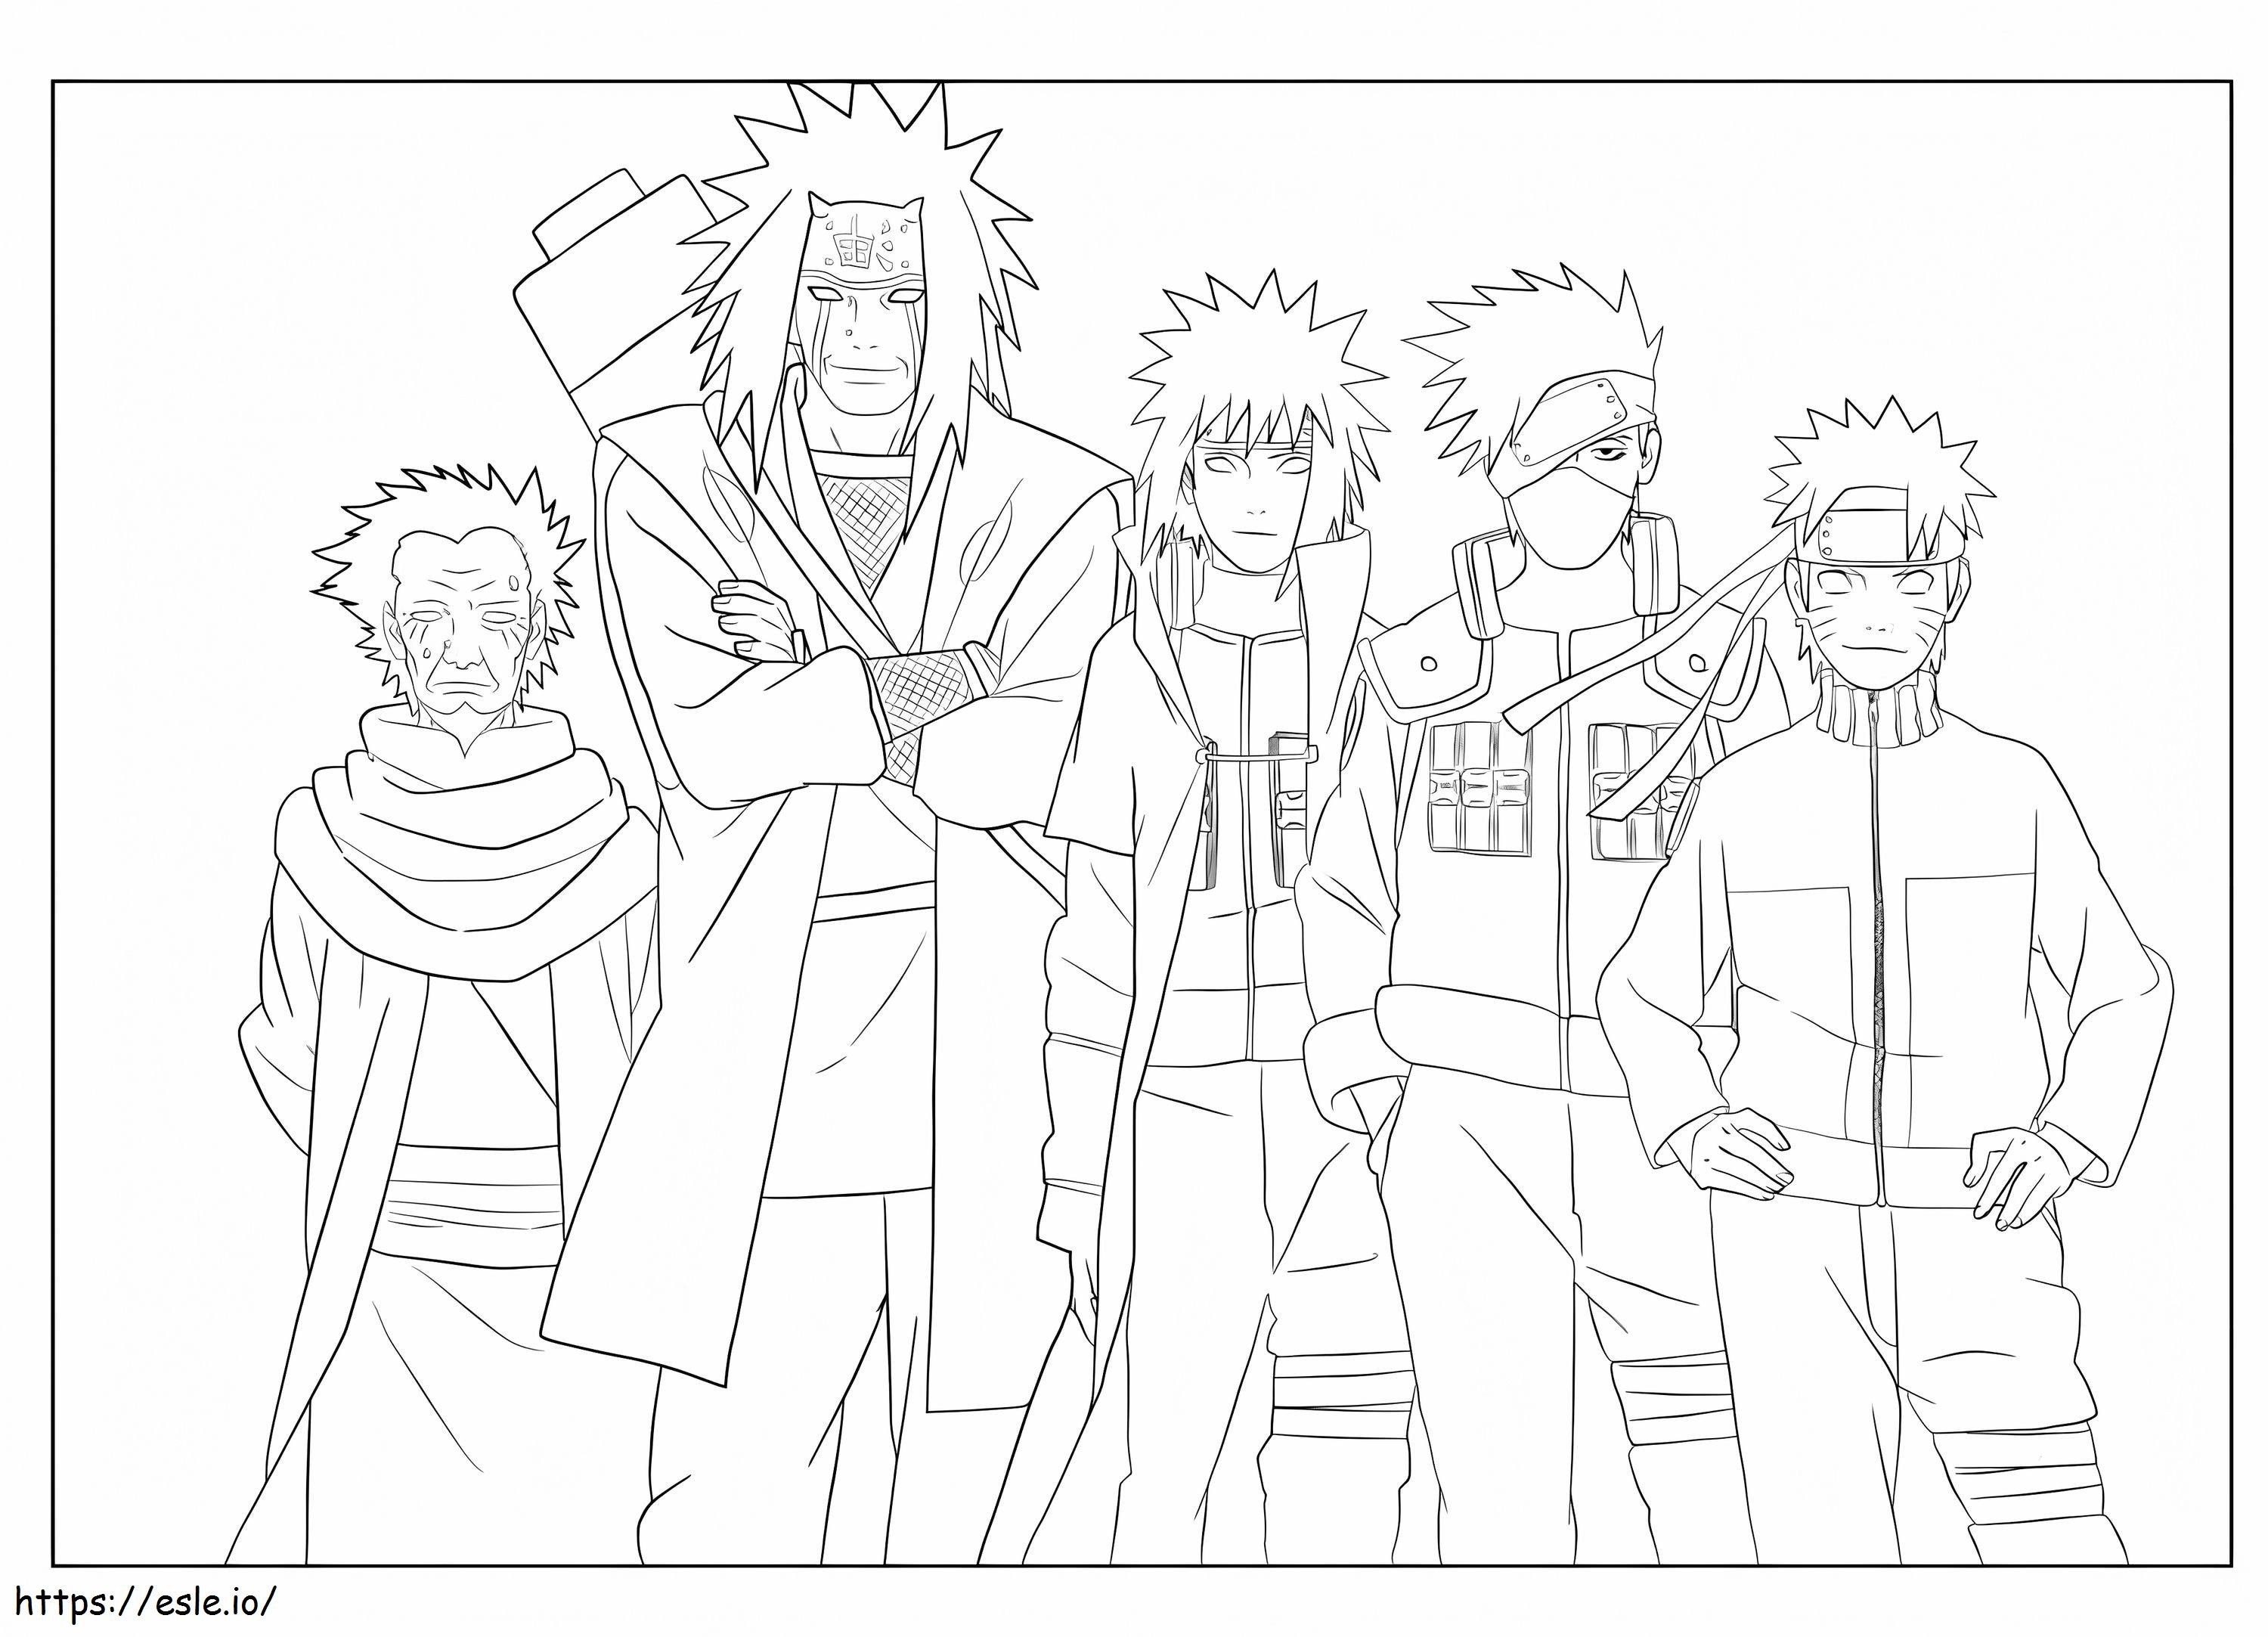 Kakashi i czwórka z Naruto kolorowanka